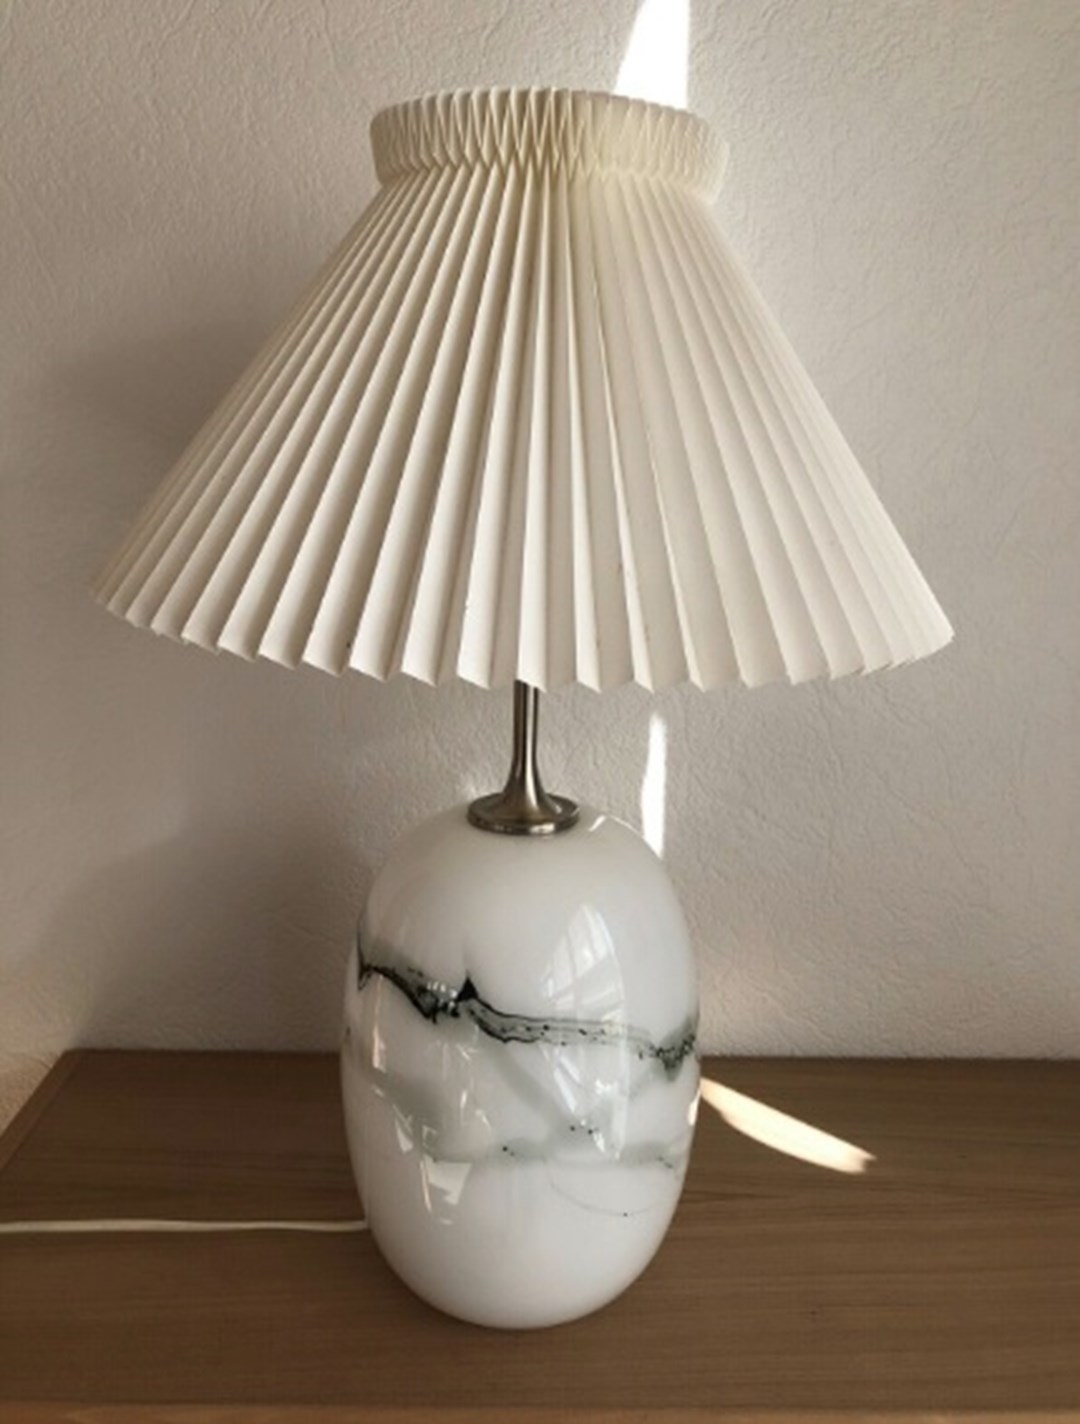 Denne lampe skal du punge 1.200 kroner ud for, hvis den skal blive din. Det er Dorthe fra Pandrup nær Blokhus, der har lampen til salg på DBA